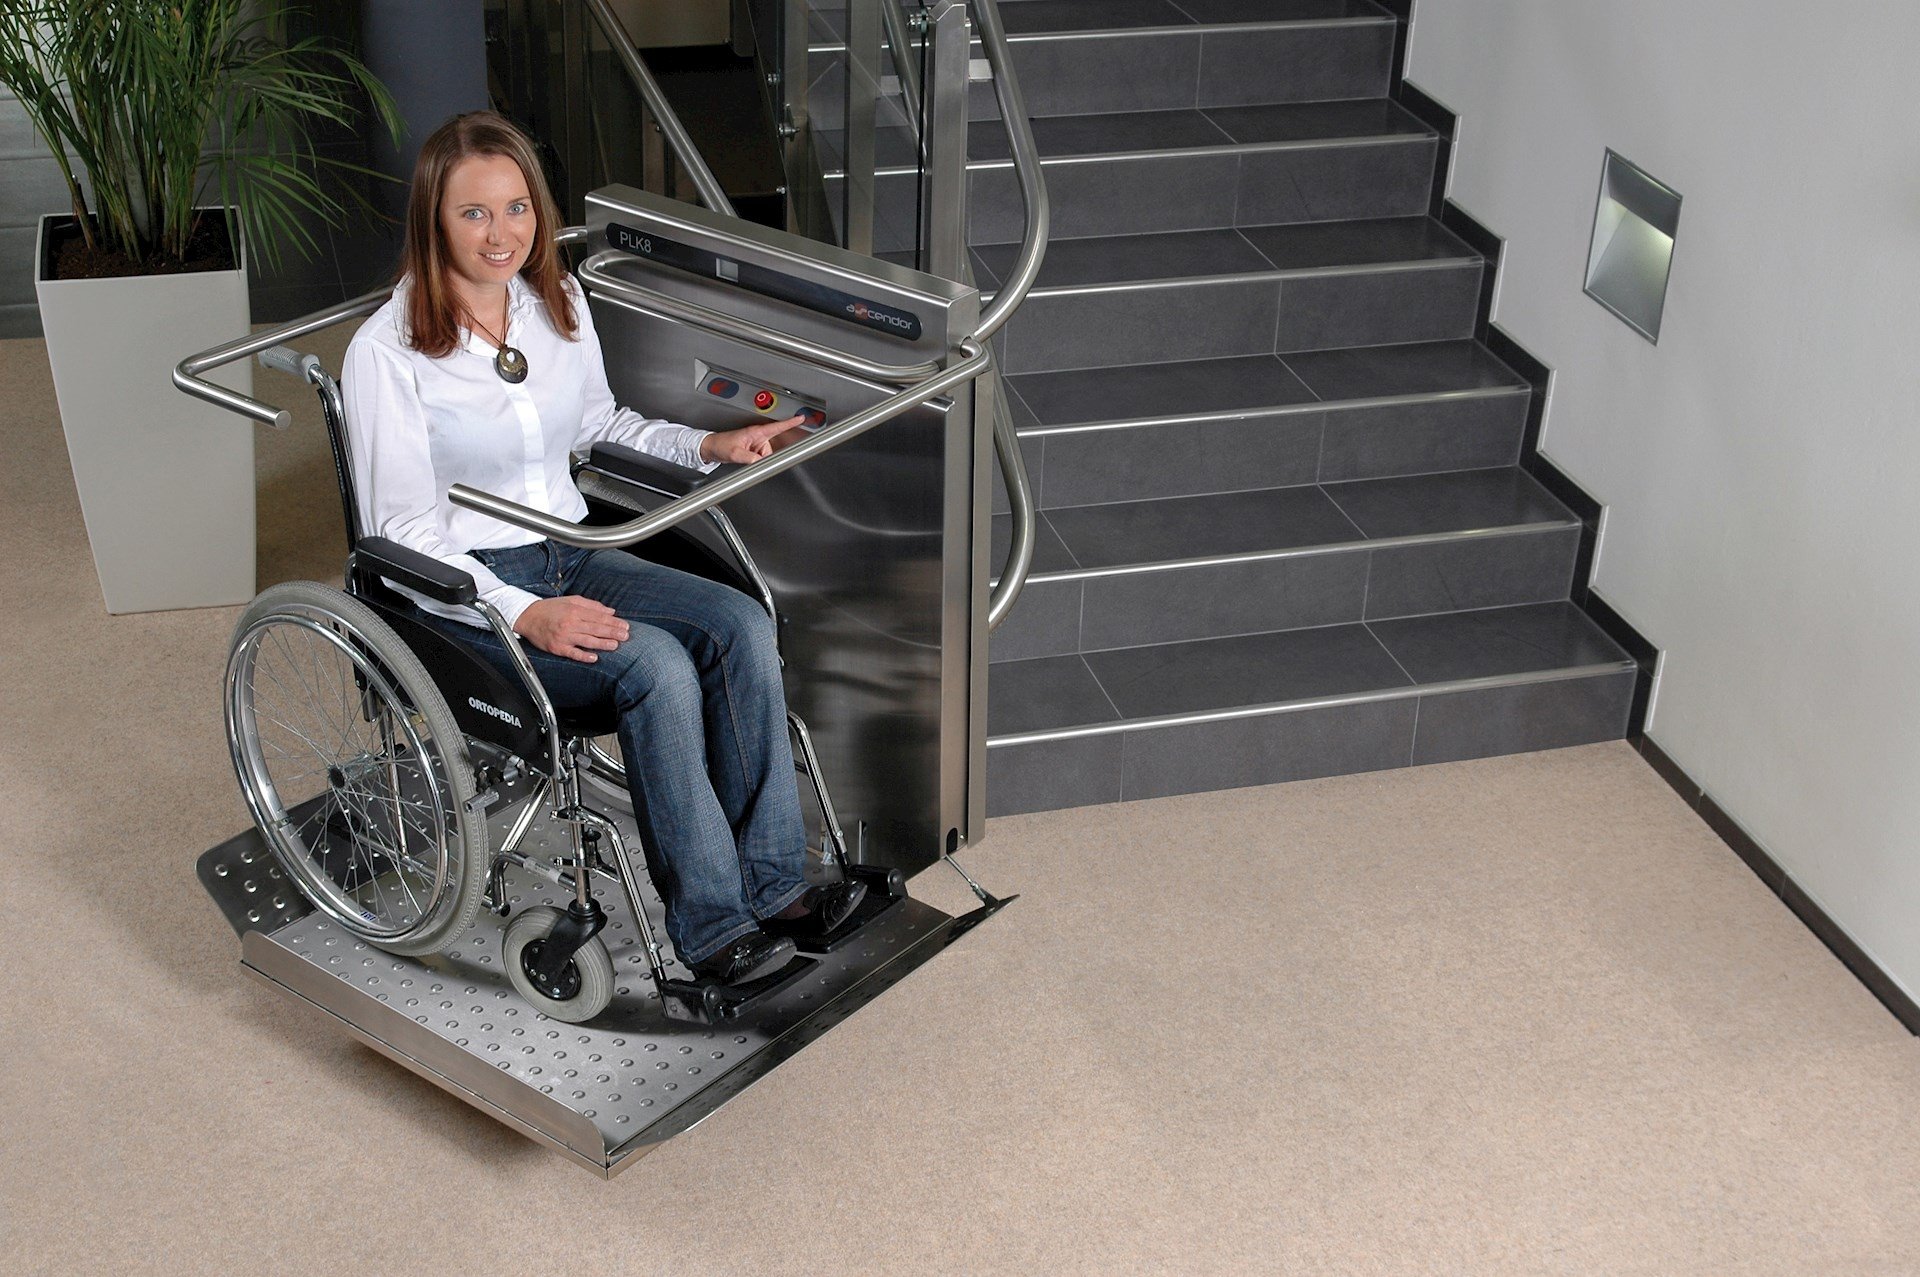 Помощь маломобильным пассажирам medportal. ИНВАПРОМ а310 подъемник для инвалидов. Подъемная платформа БК-320 для инвалидов. Наклонная платформа - подъемник для инвалидов НПУ-001. Вертикальная платформа-подъемник для инвалидов 1100x1250 Veara EASYLIFT.